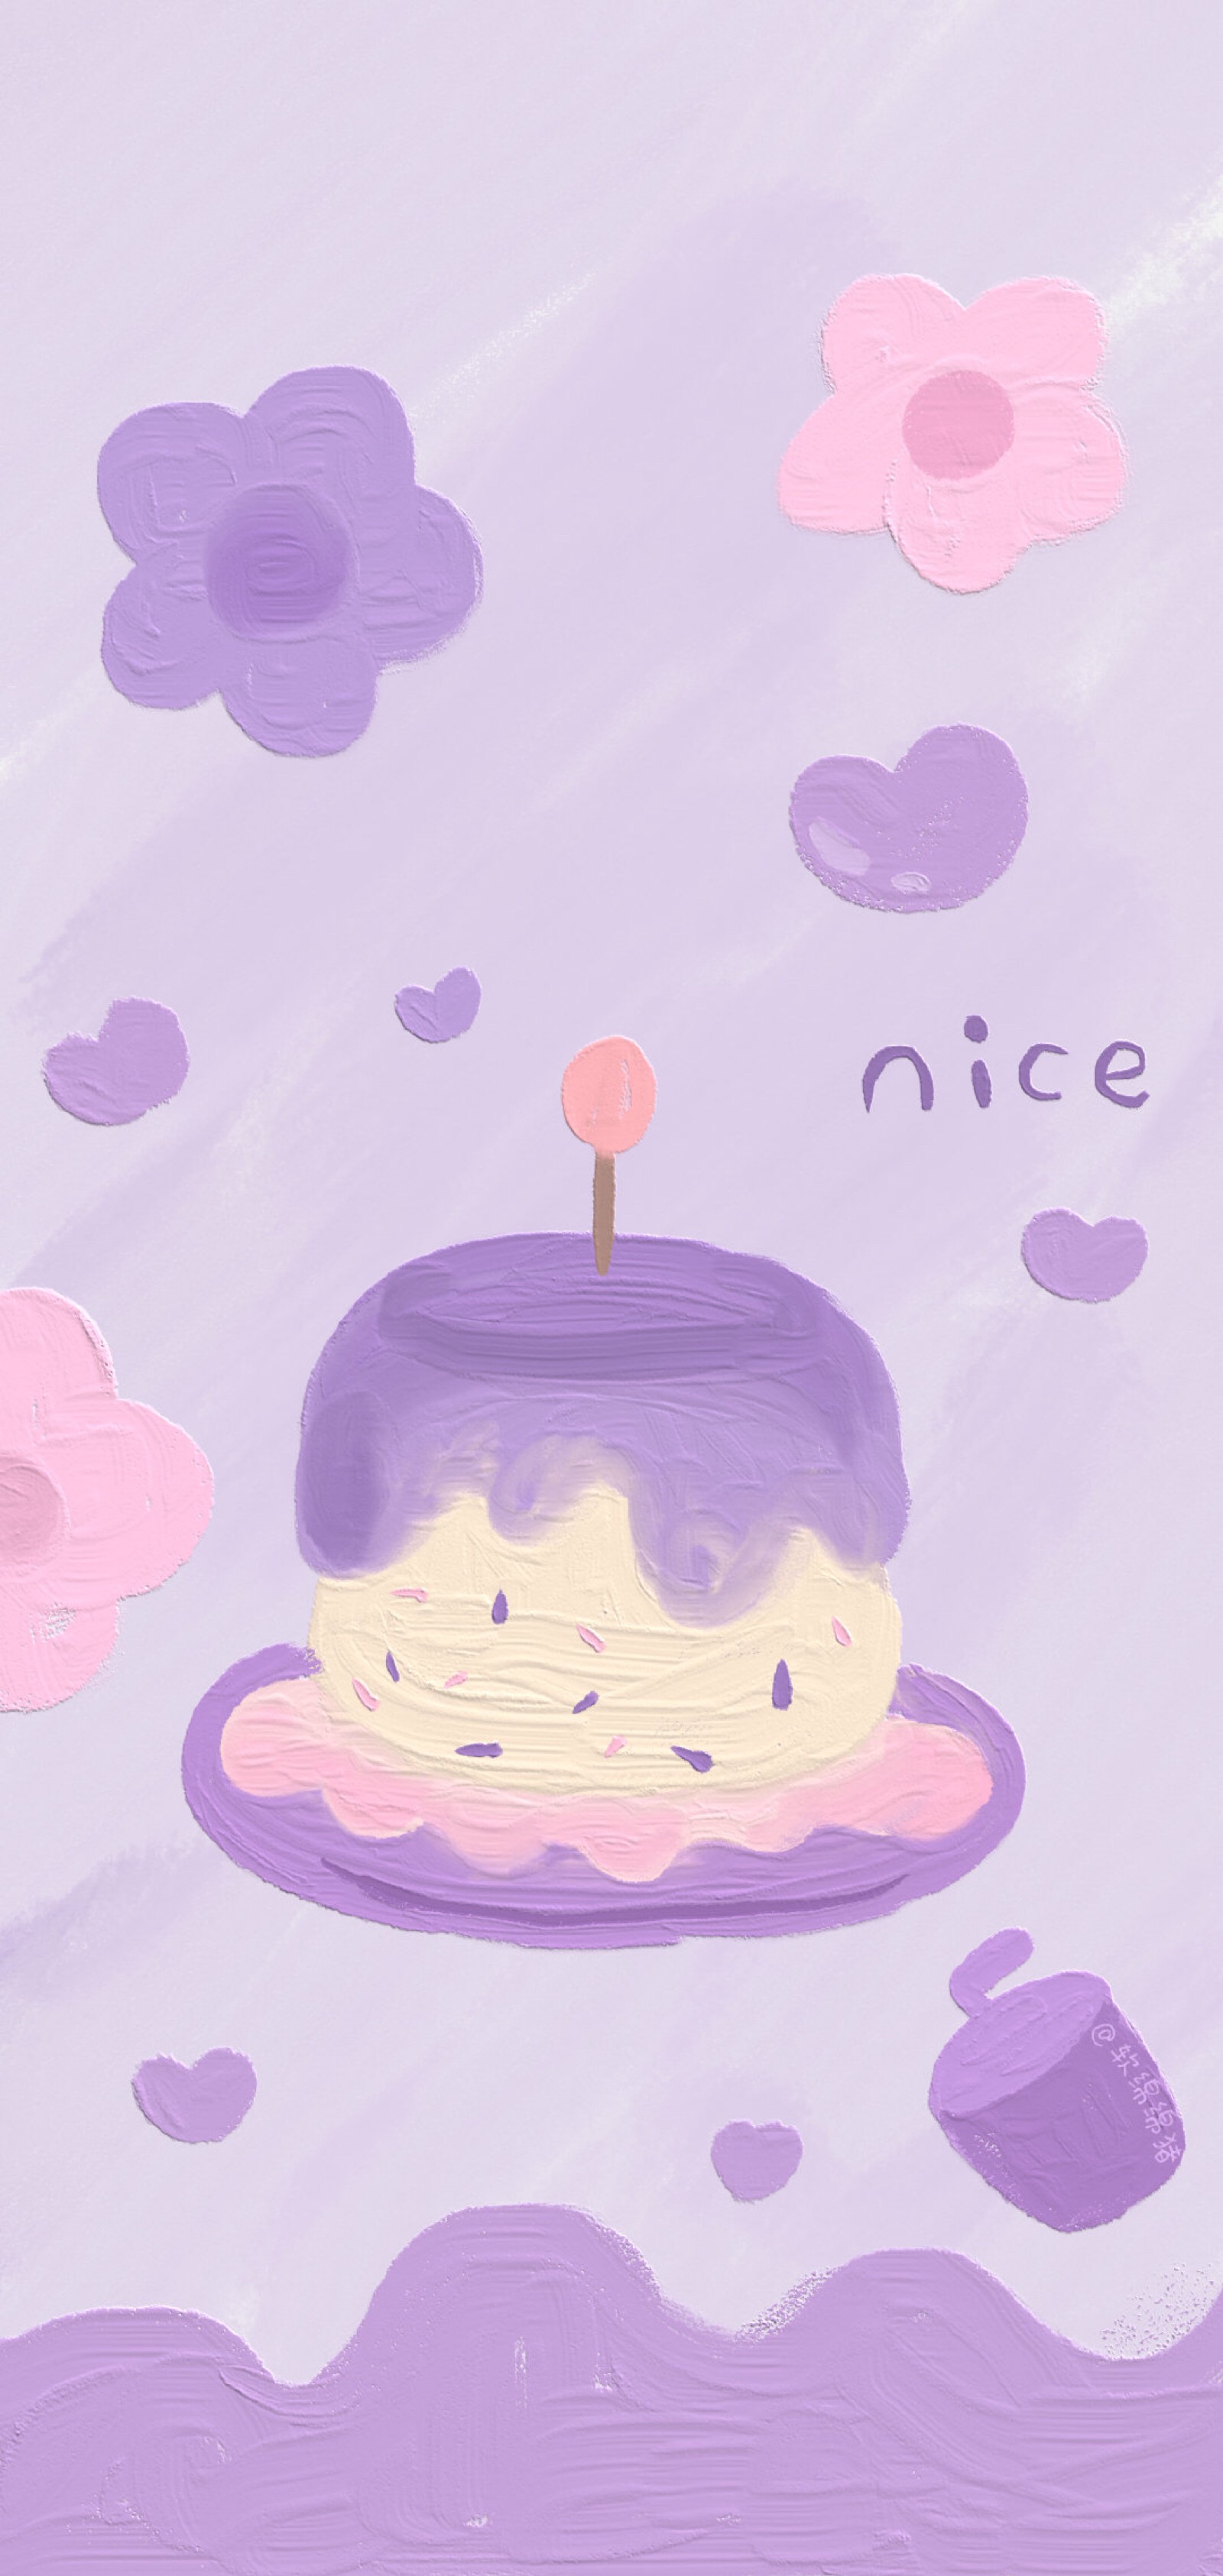 祝你生日快乐 少女心壁纸 紫色系壁纸 可爱壁纸 cr:软绵绵猪